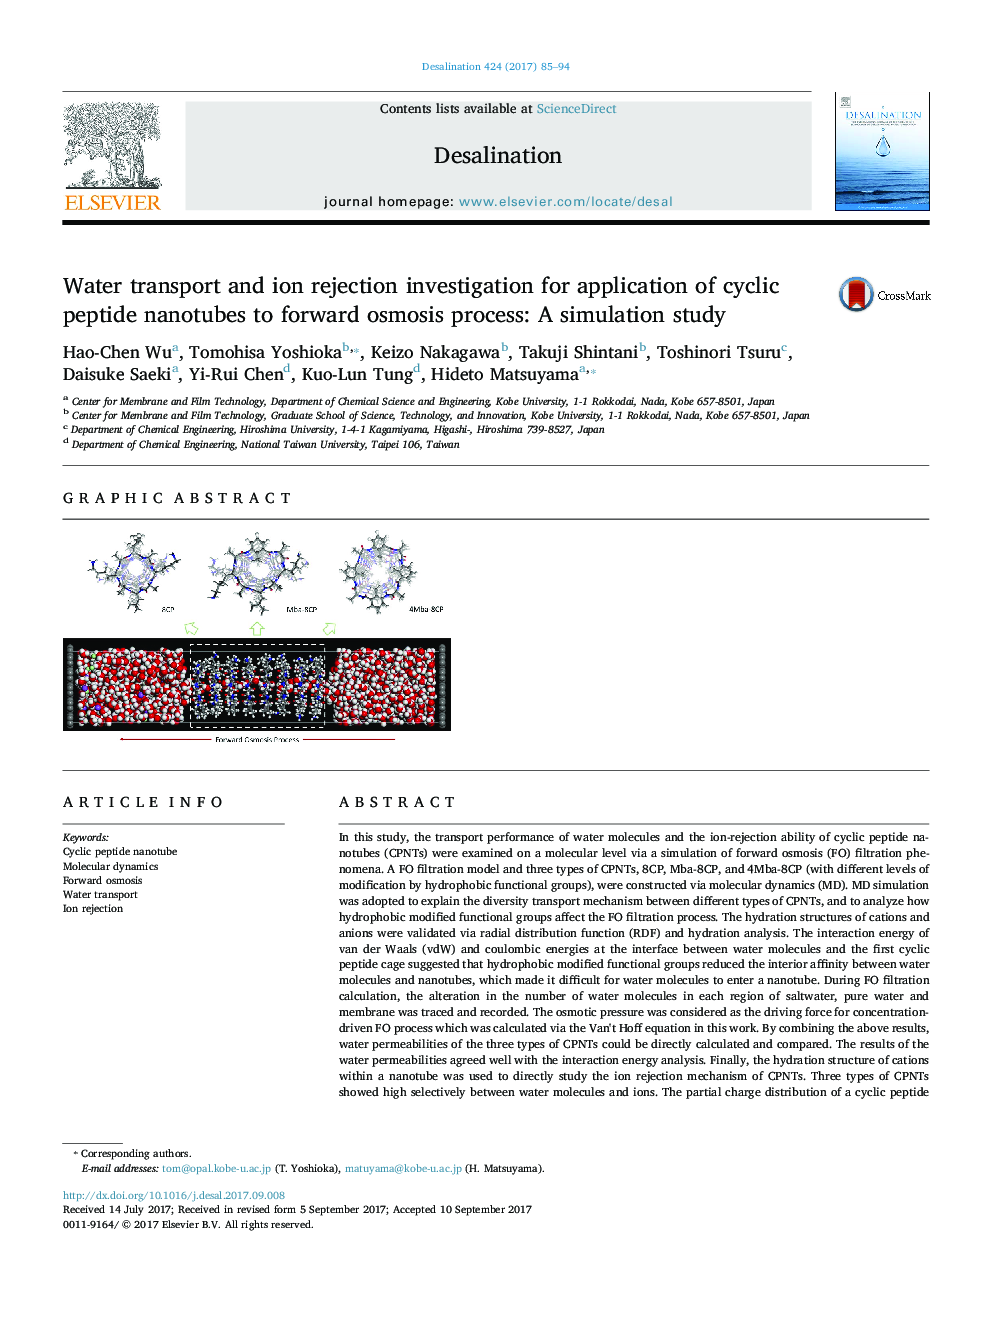 بررسی حمل و نقل آب و یون ها برای استفاده از نانولوله های پپتیدی چرخه ای برای انتقال پروسه اسمز: یک مطالعه شبیه سازی 